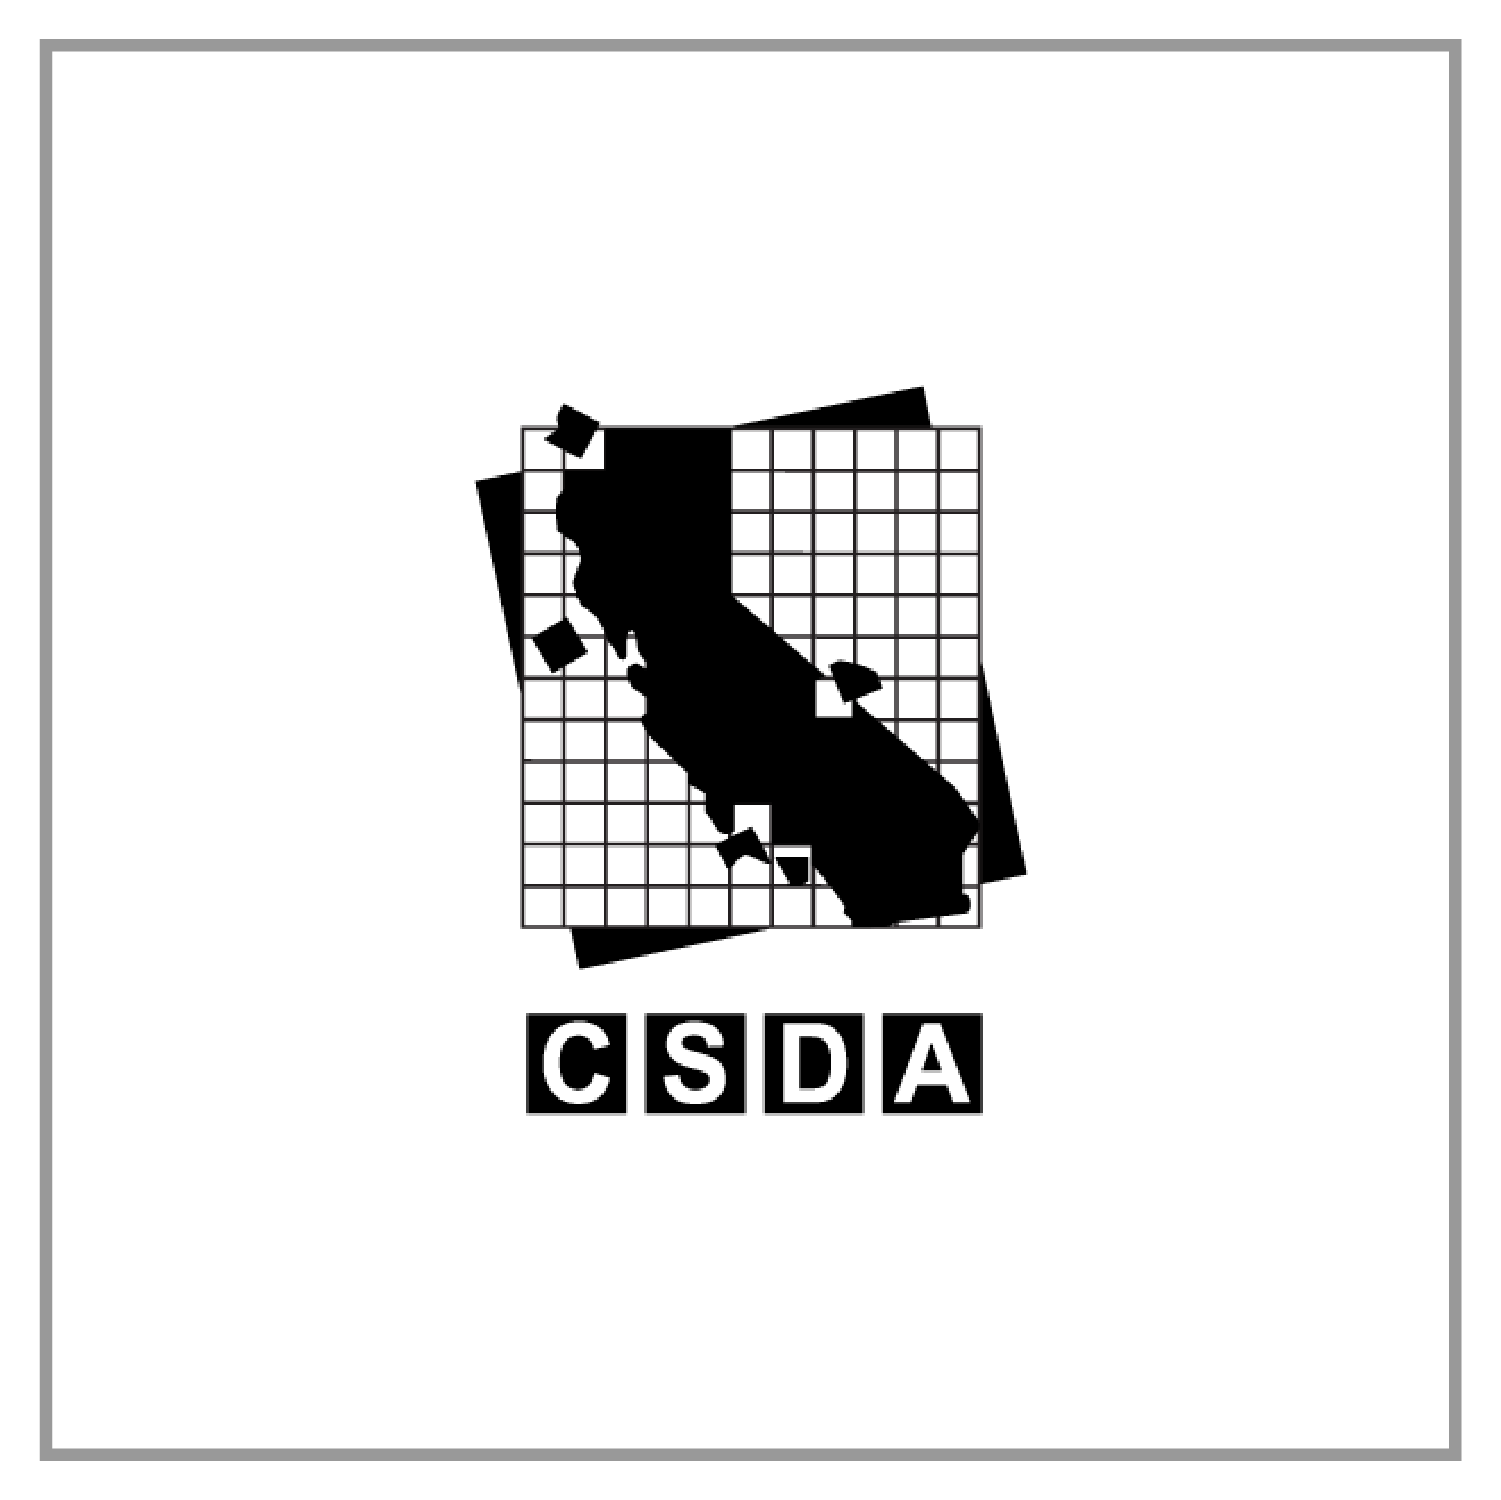 csda logo in gray box